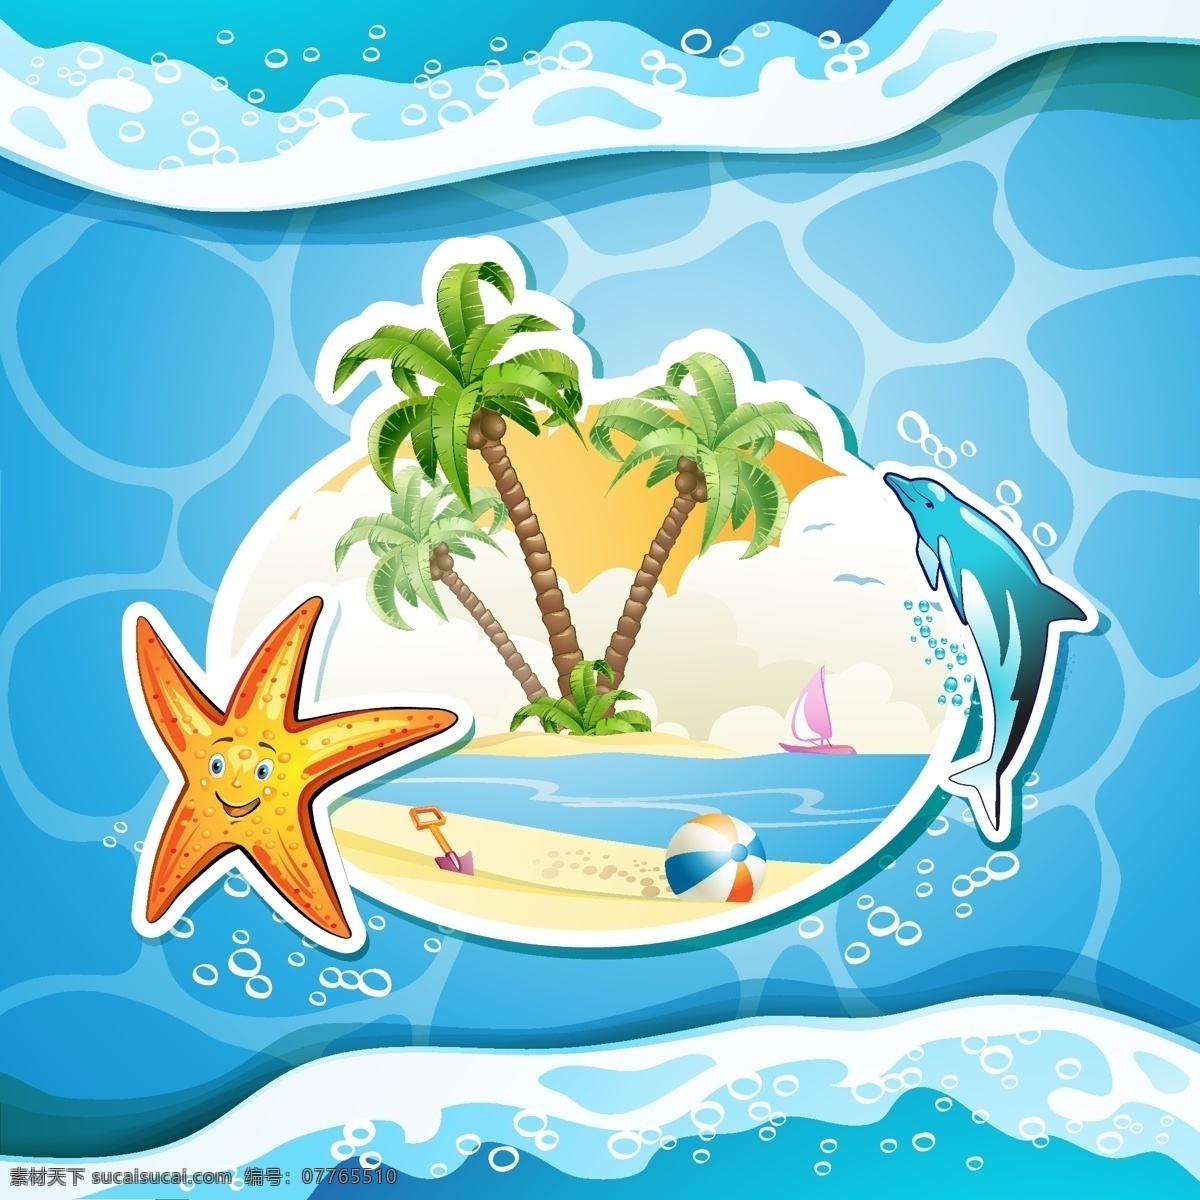 卡通 海水 插画 夏日 沙滩 海洋 帆船 矢量 海星 岛屿 椰树 风景 创意 涂鸦 小清新 填充 背景 海报 广告 包装 印刷 夏天